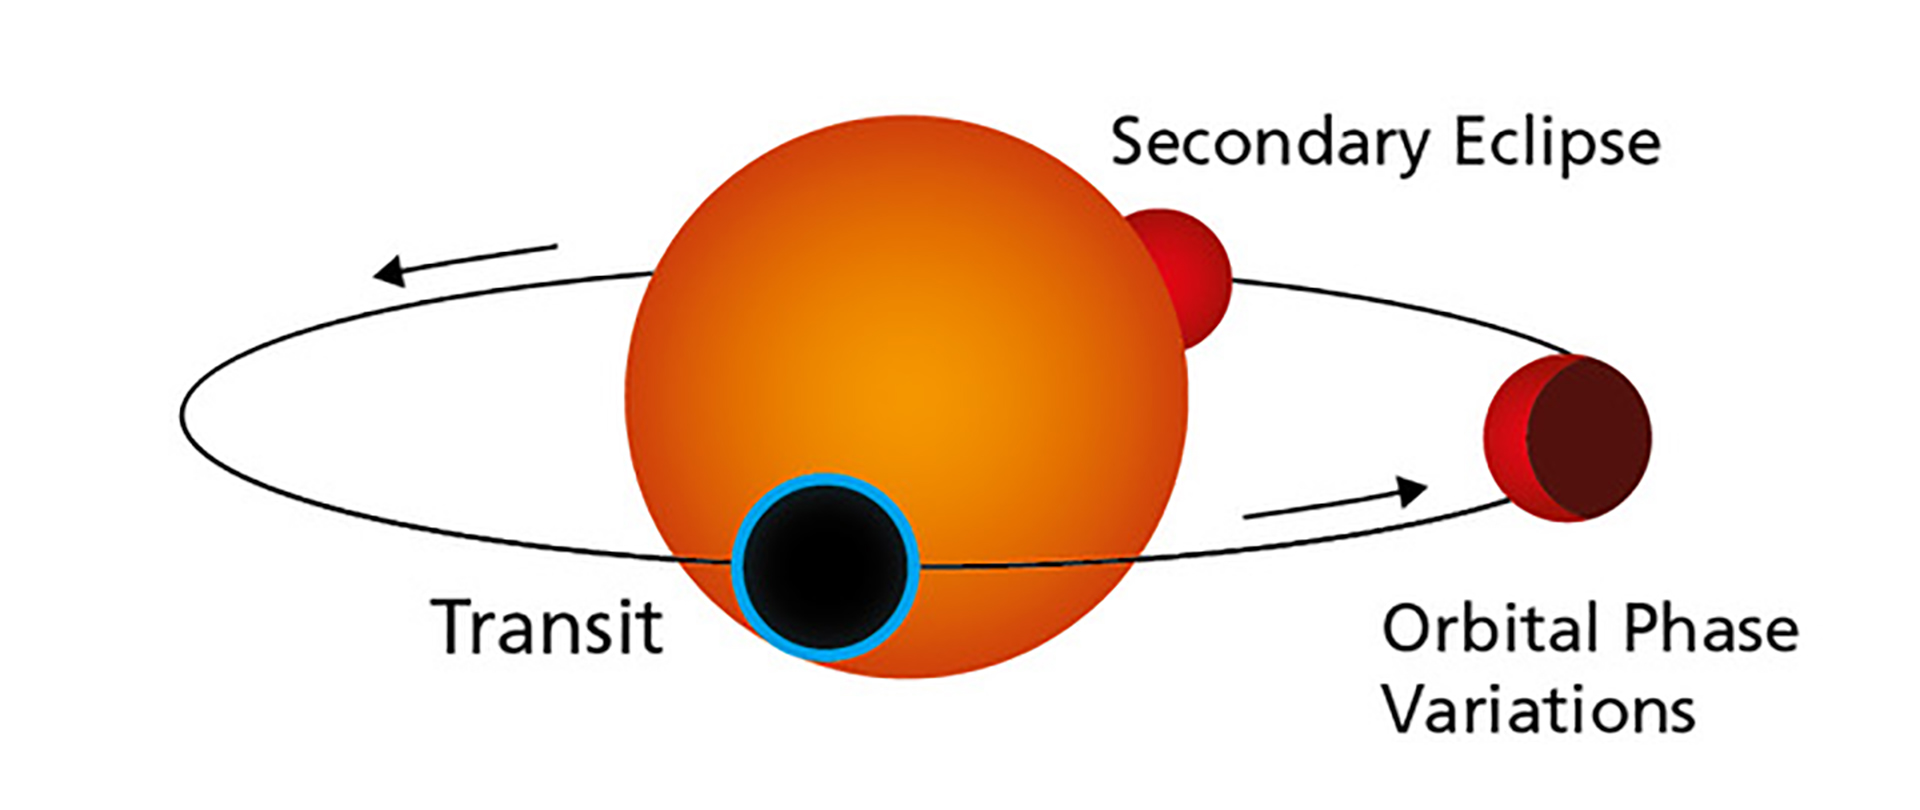 El gráfico ilustra la órbita de un exoplaneta rocoso en tránsito como Gliese 486b alrededor de su estrella anfitriona. Durante el tránsito, el planeta eclipsa el disco estelar. Simultáneamente, una pequeña porción de la luz estelar pasa a través de la atmósfera del planeta. Mientras Gliese 486b continúa orbitando, partes del hemisferio iluminado se hacen visibles como fases hasta que el planeta desaparece detrás de la estrella. Crédito: Departamento de gráficos MPIA.